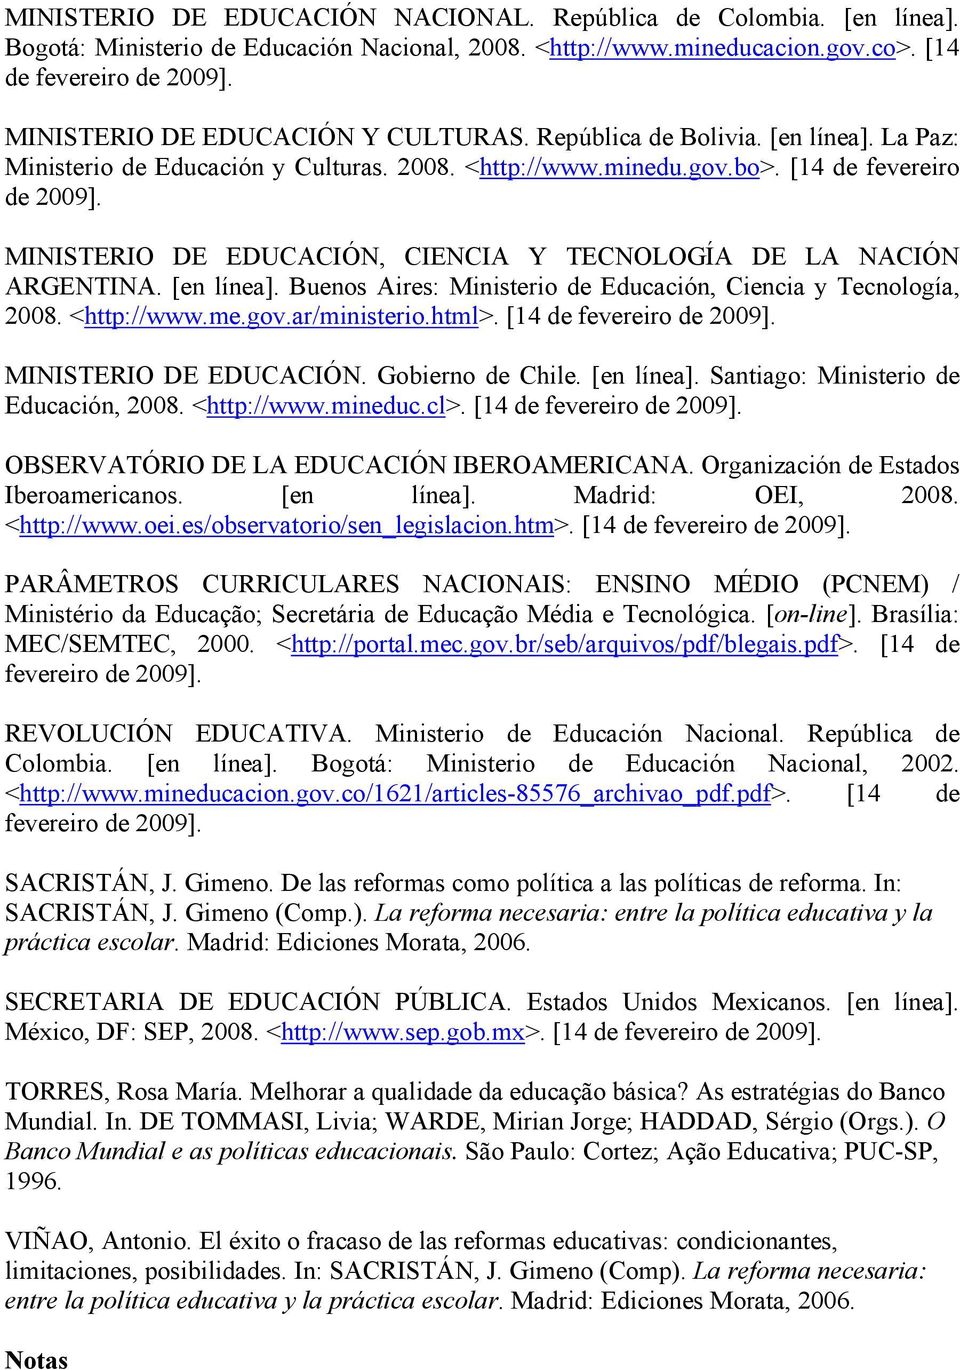 MINISTERIO DE EDUCACIÓN, CIENCIA Y TECNOLOGÍA DE LA NACIÓN ARGENTINA. [en línea]. Buenos Aires: Ministerio de Educación, Ciencia y Tecnología, 2008. <http://www.me.gov.ar/ministerio.html>.